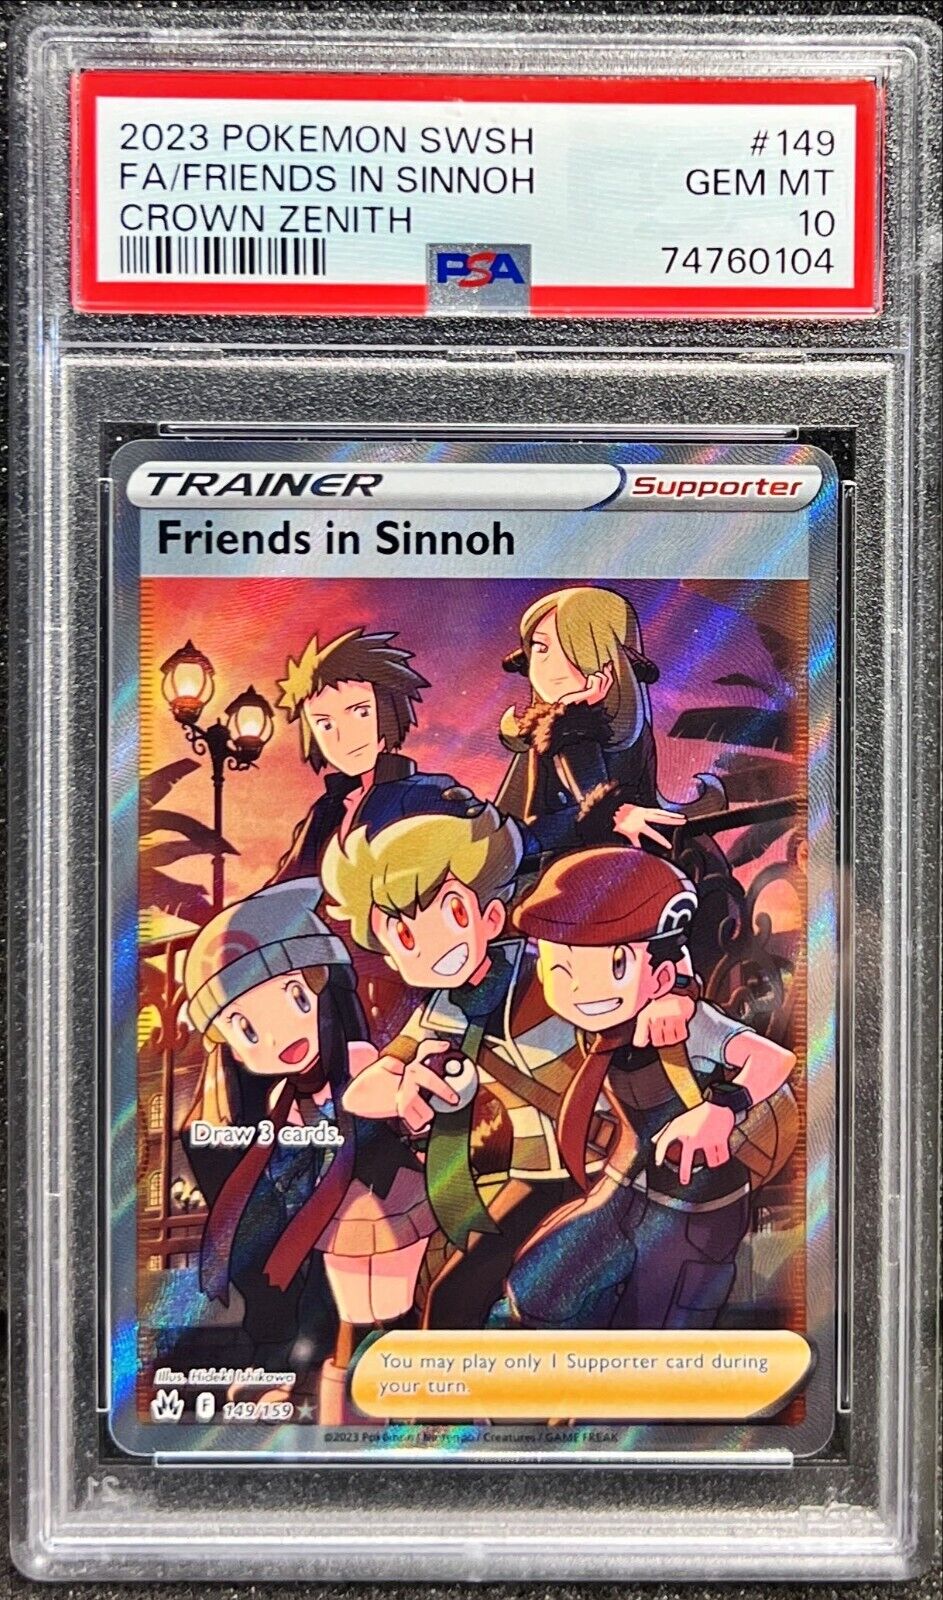 2023 Pokemon SWSH Crown Zenith - Friends in Sinnoh #149 - PSA 10